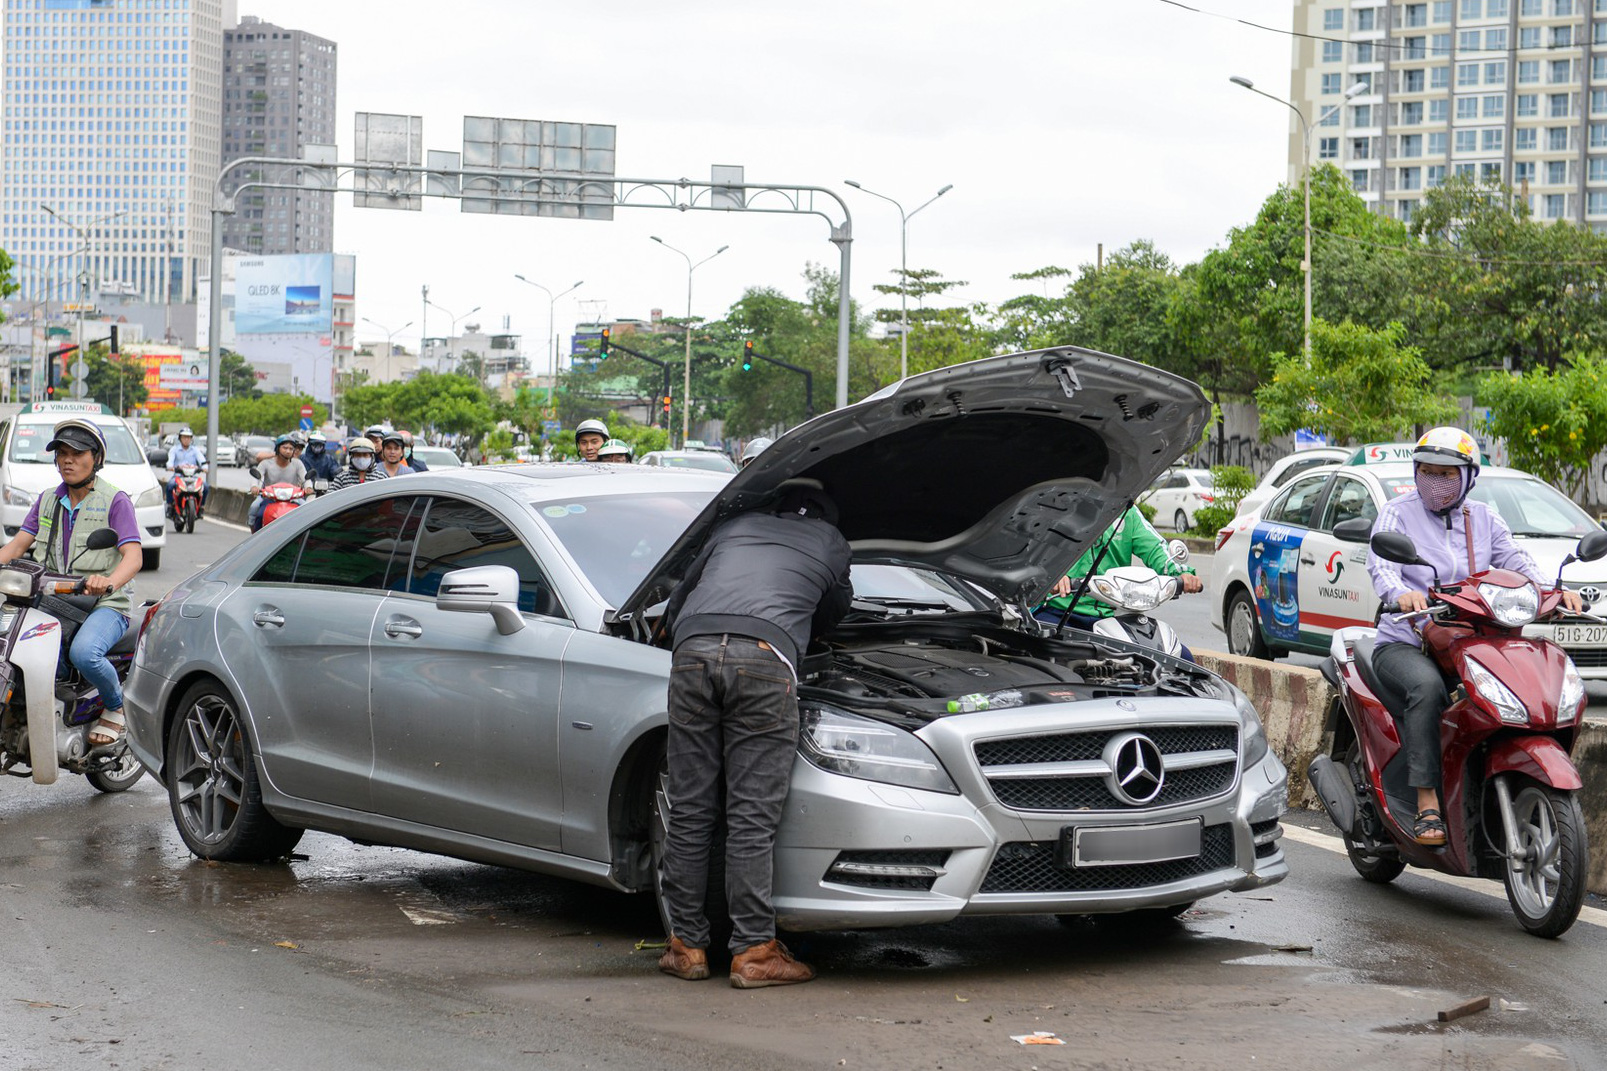 Mercedes-Benz tung gói hỗ trợ đặc biệt cho chủ xe tại Việt Nam: Có mặt 24/7, cung cấp xăng miễn phí, hỗ trợ y tế tới 140 triệu đồng